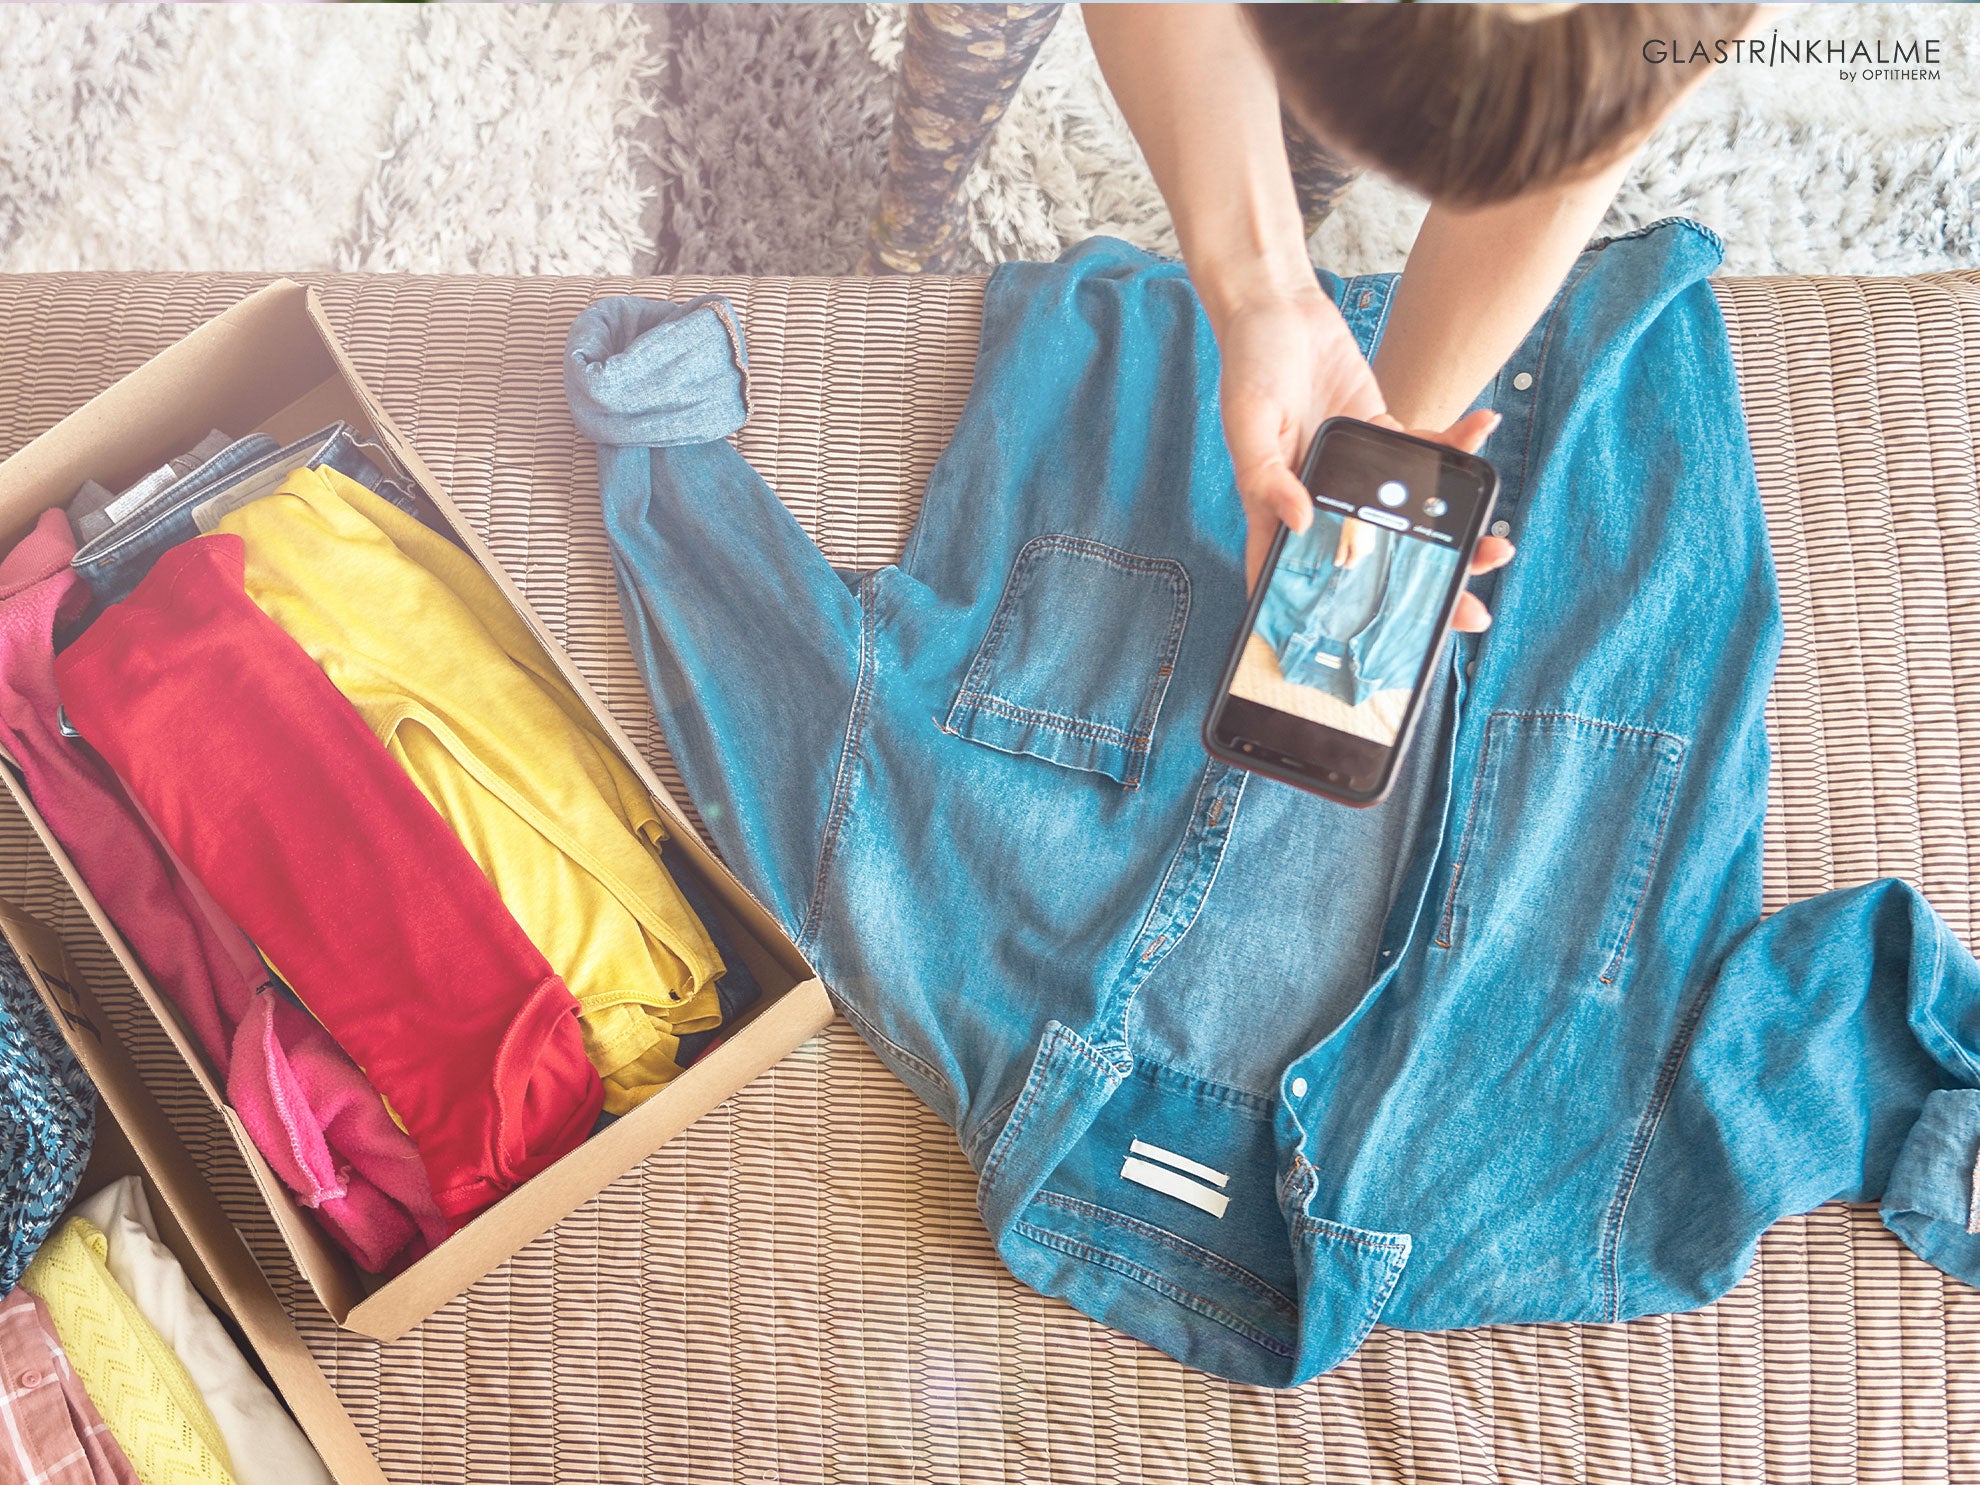 Gebrauchte Kleidungsstücke werden mit einem Smartphone fotografiert